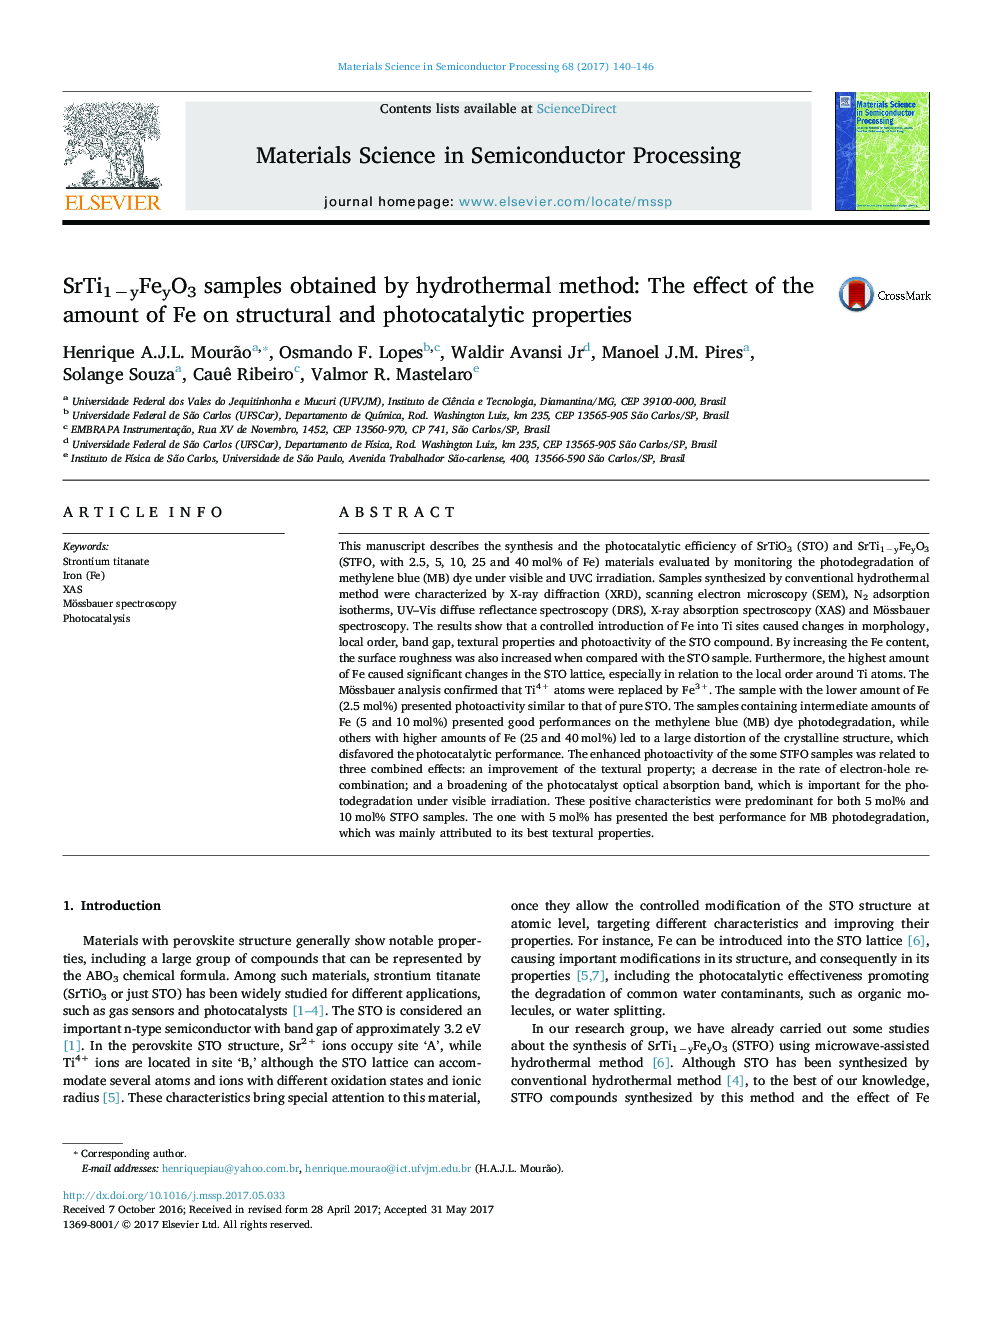 SrTi1âyFeyO3 samples obtained by hydrothermal method: The effect of the amount of Fe on structural and photocatalytic properties